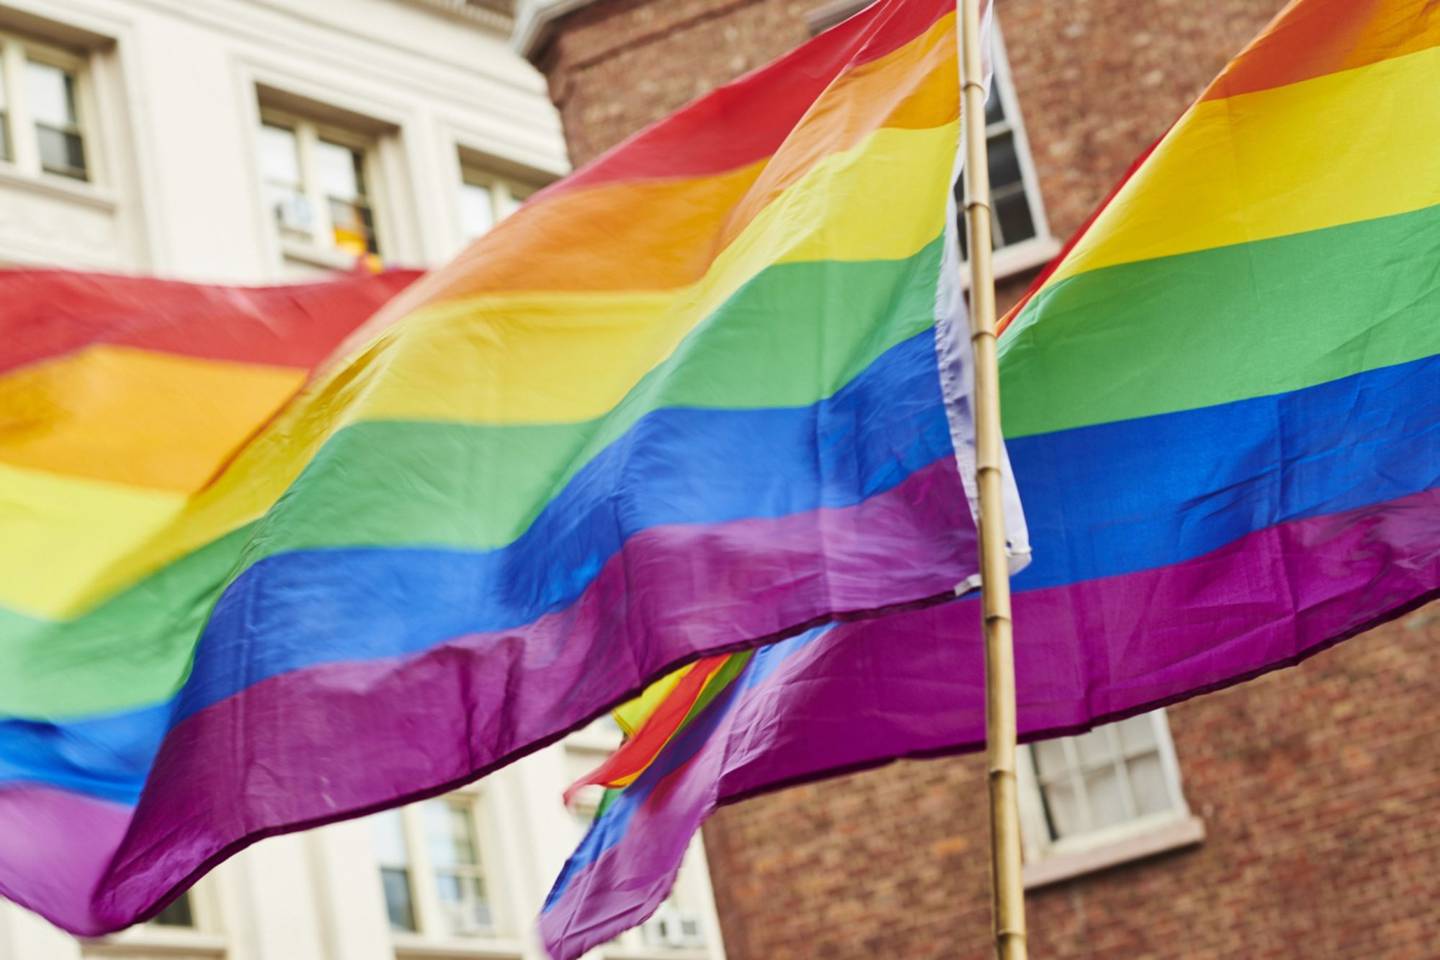 Quienes acudan al Mundial podrían realizar protestas pacíficas, promover los derechos de la comunidad LGBT y besarse en público, de acuerdo con una presentación vista por Bloomberg.